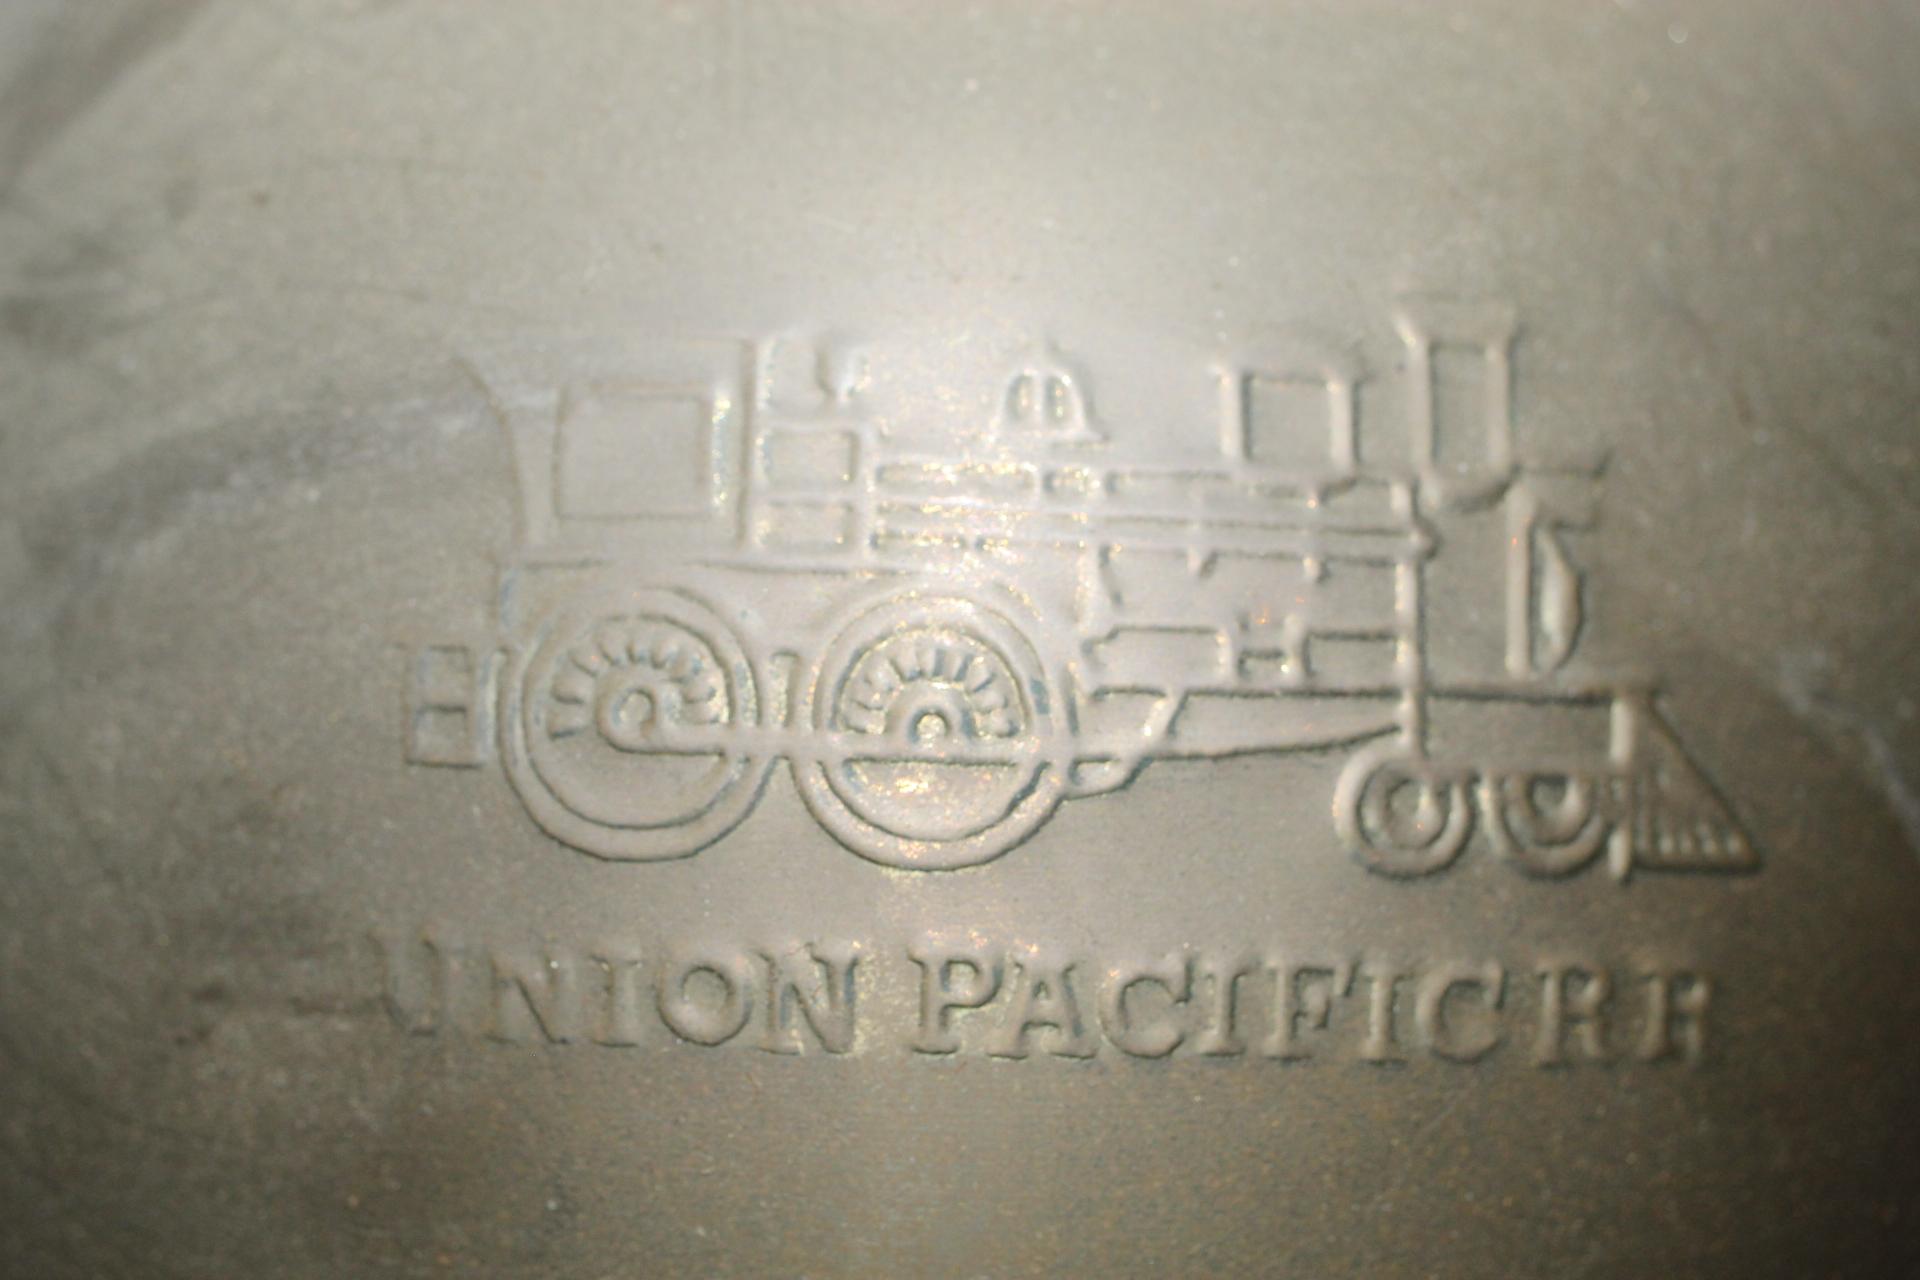 Union Pacific Railroad Spitune, 10" x 9" round